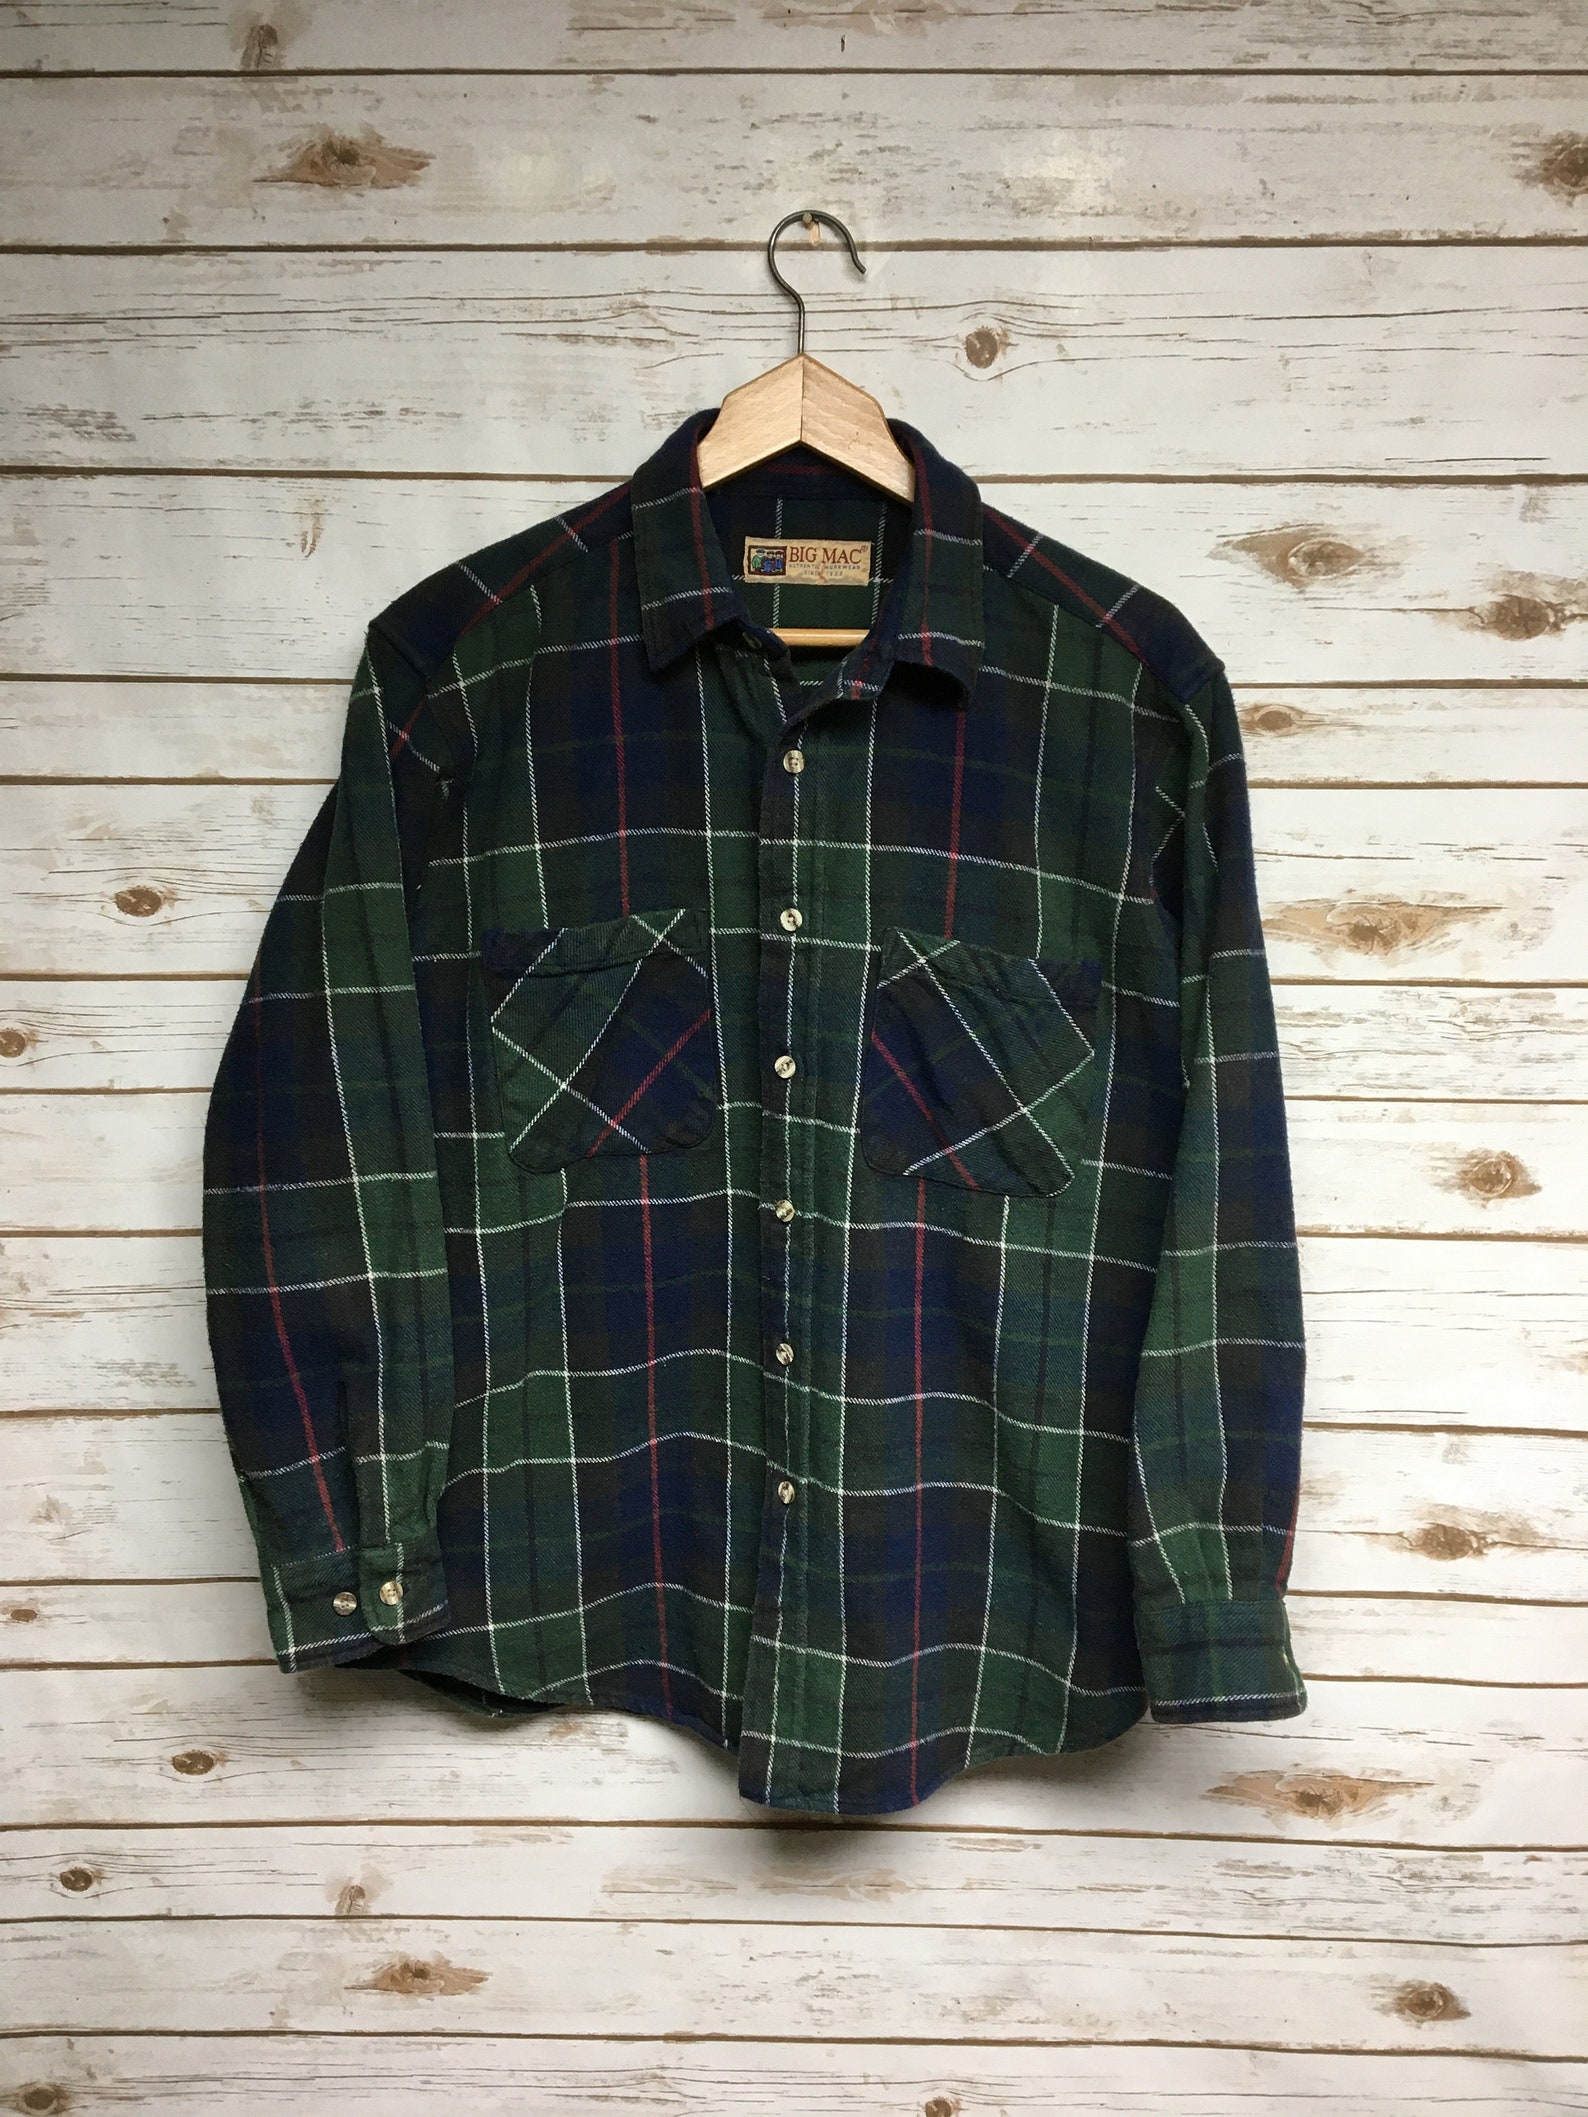 Vintage 90's Big Mac flannel shirt Heavy cotton plaid | Etsy